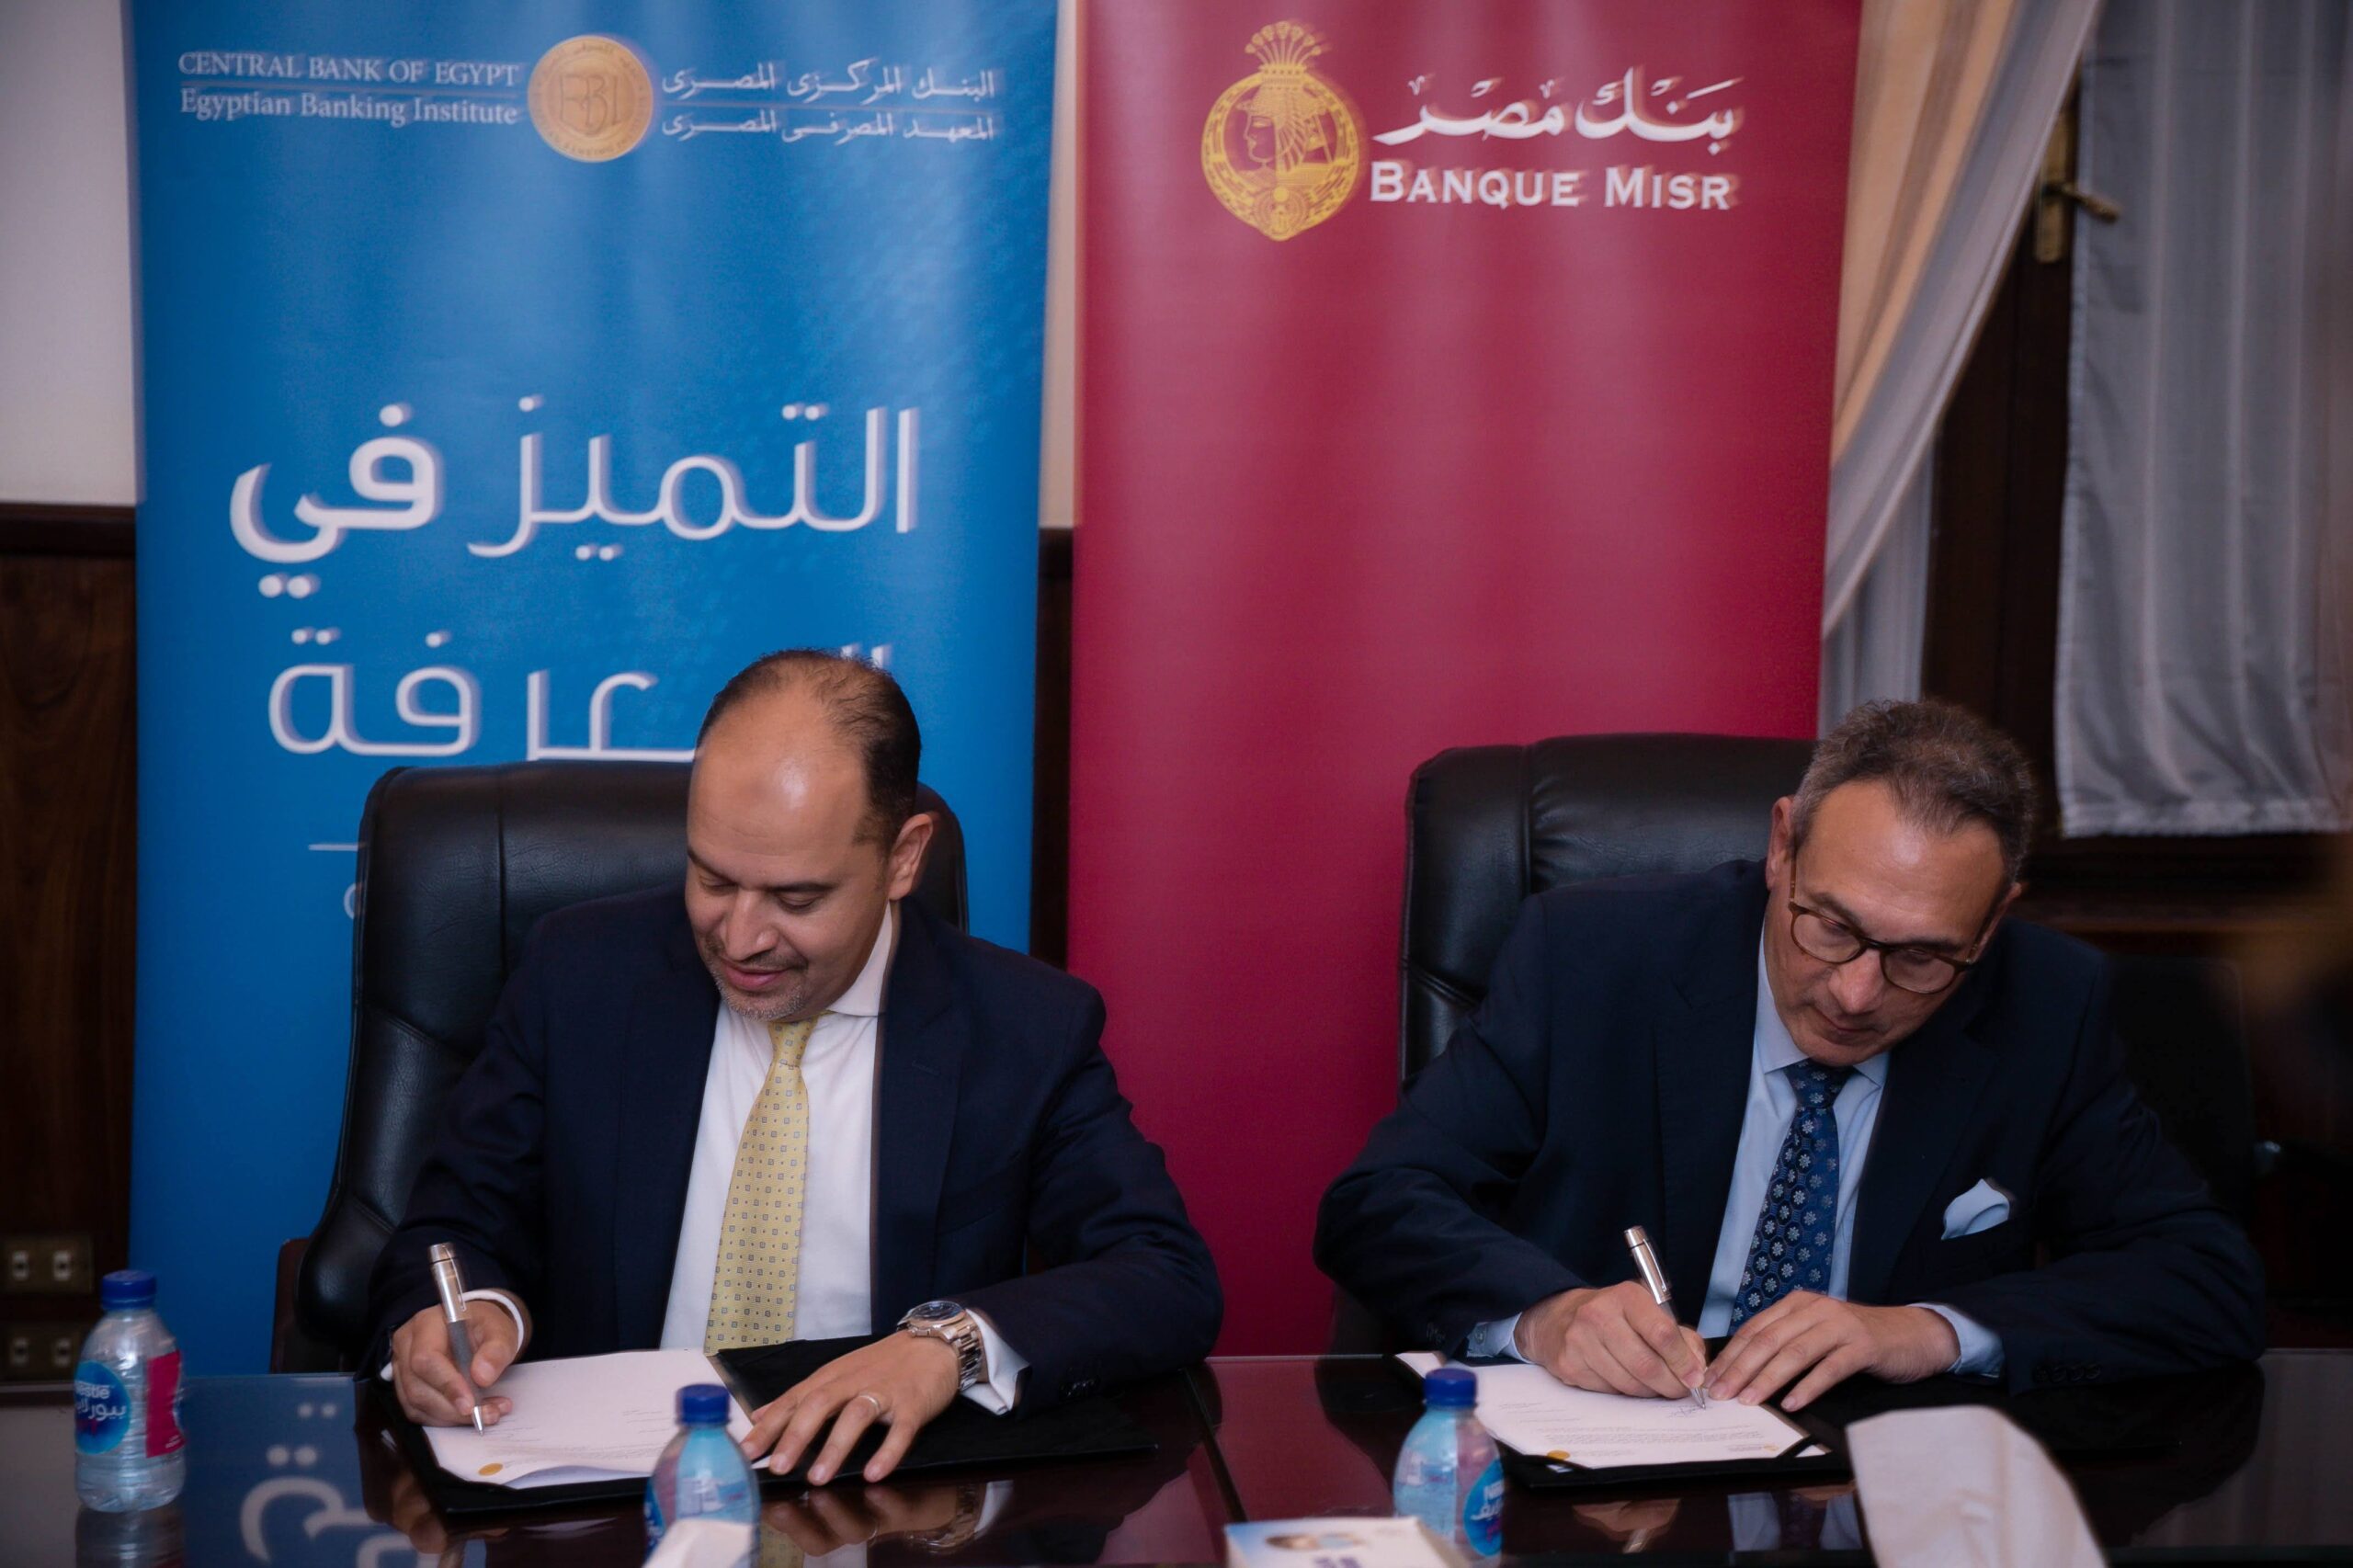 الصورة الأولى أستاذ محمد الاتربي ودكتور عبدالعزيز نصير يوقعان الاتفاقية scaled